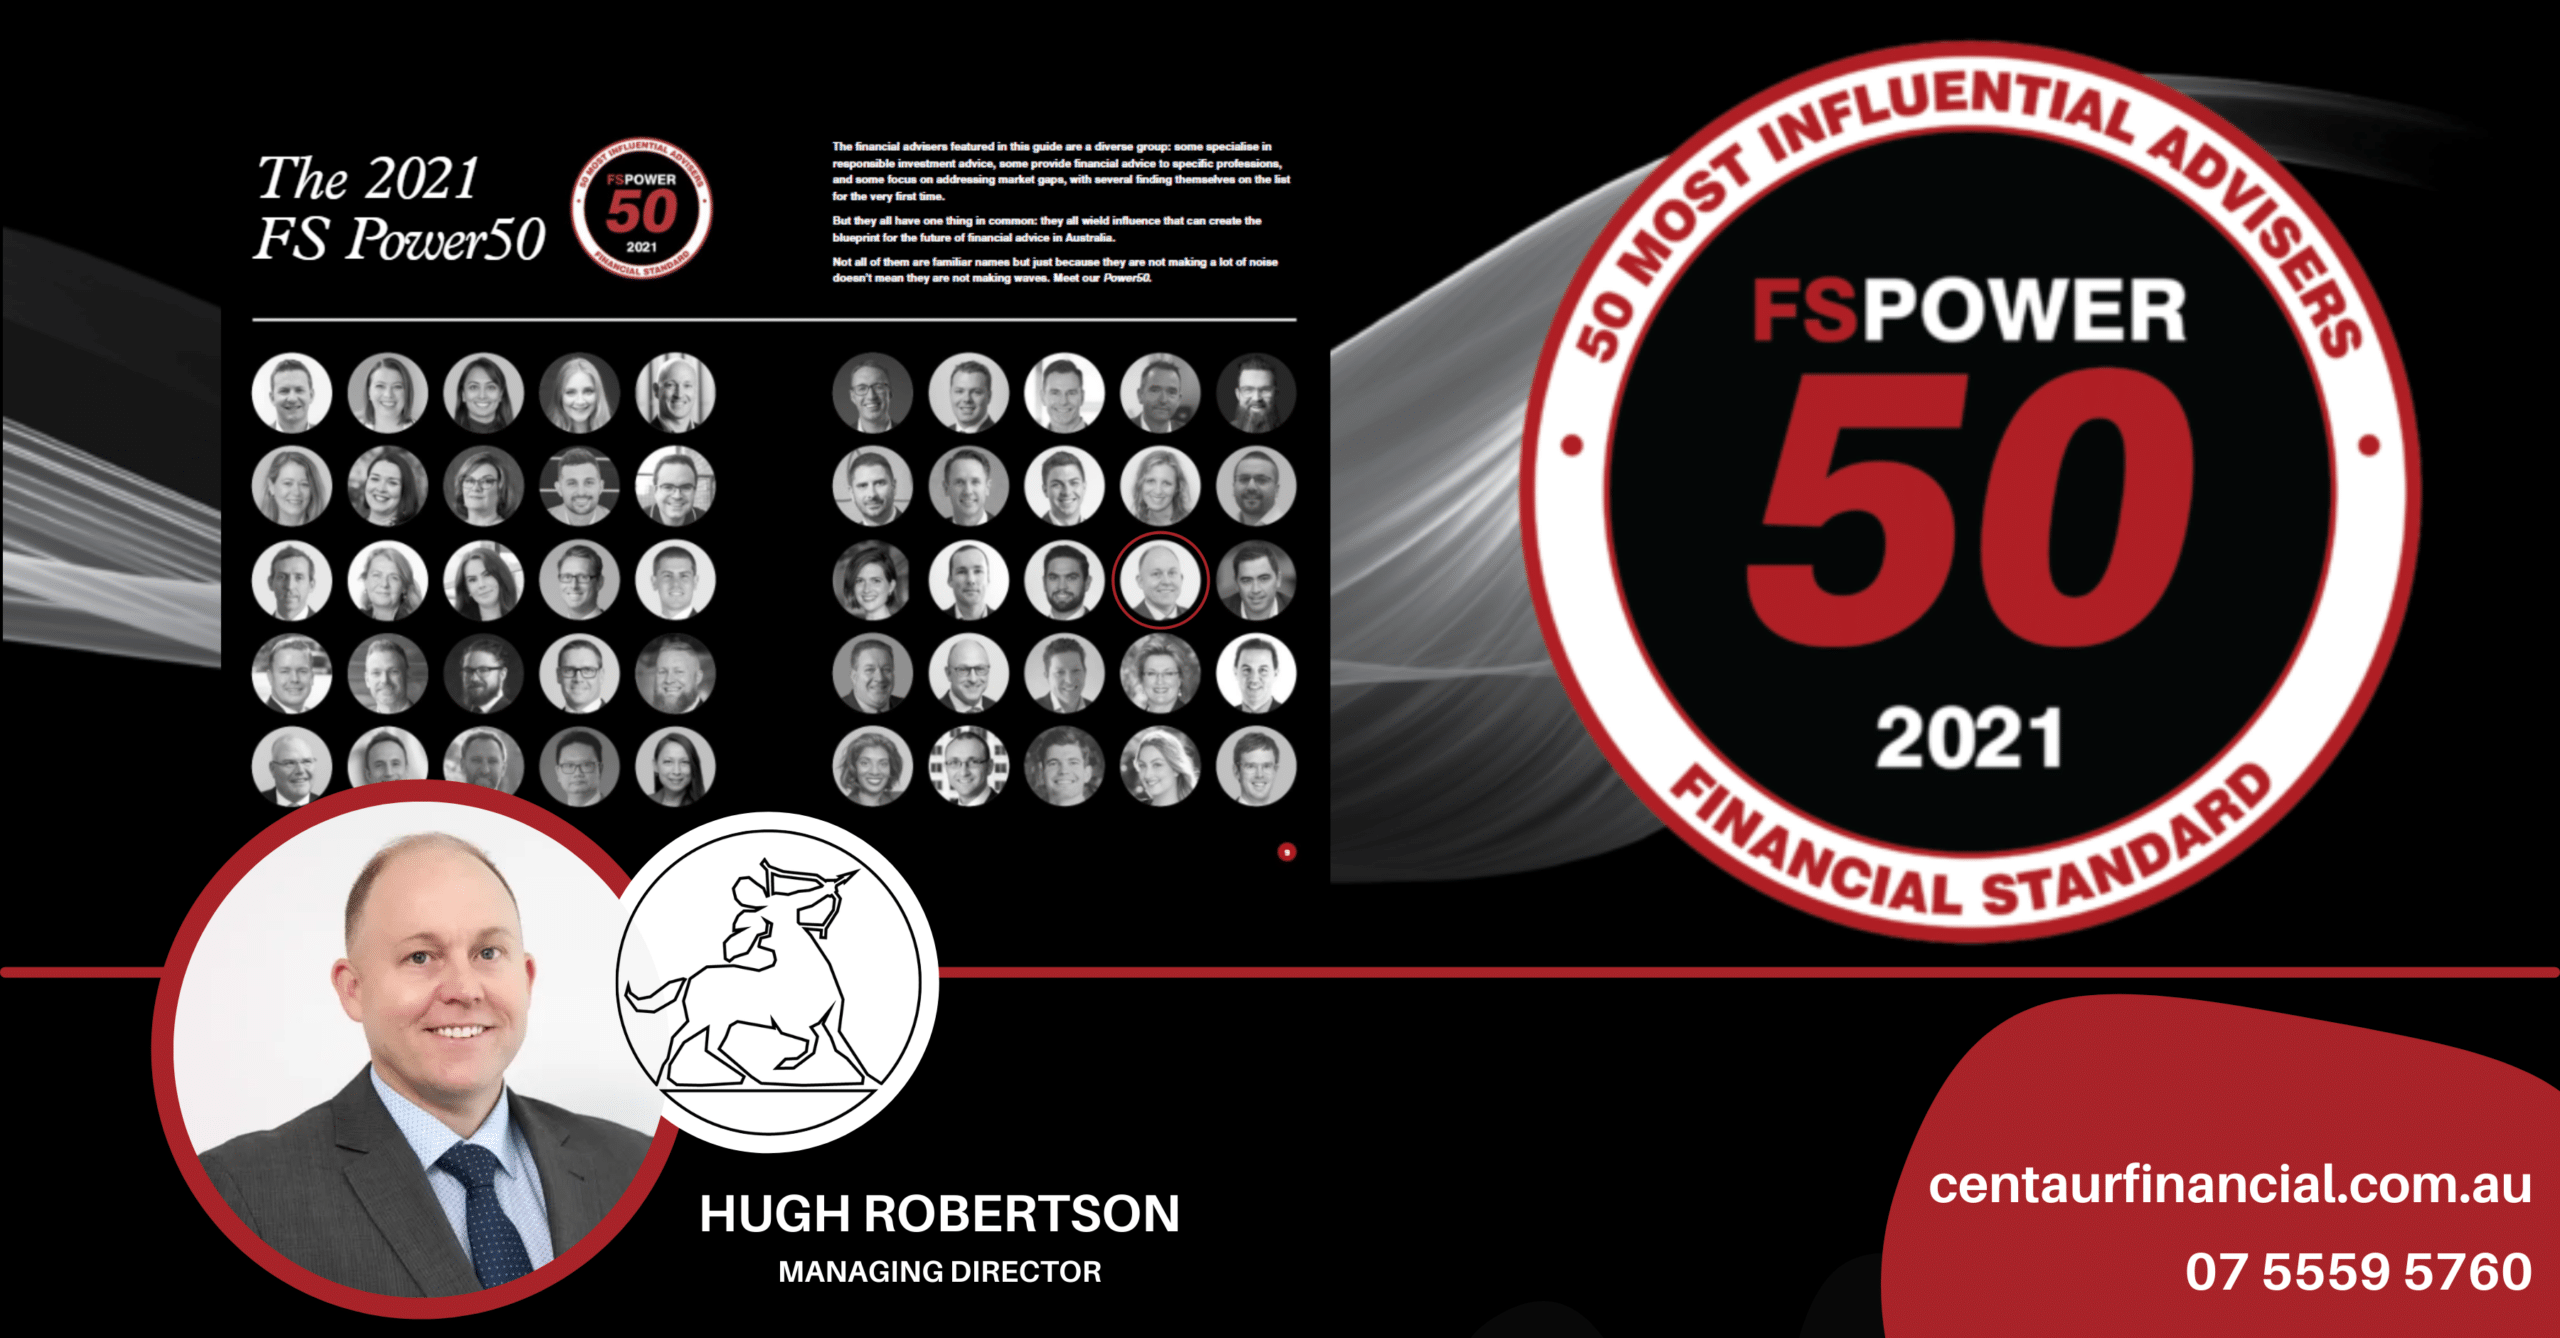 FS POWER 50 Top 50 - Hugh Robertson